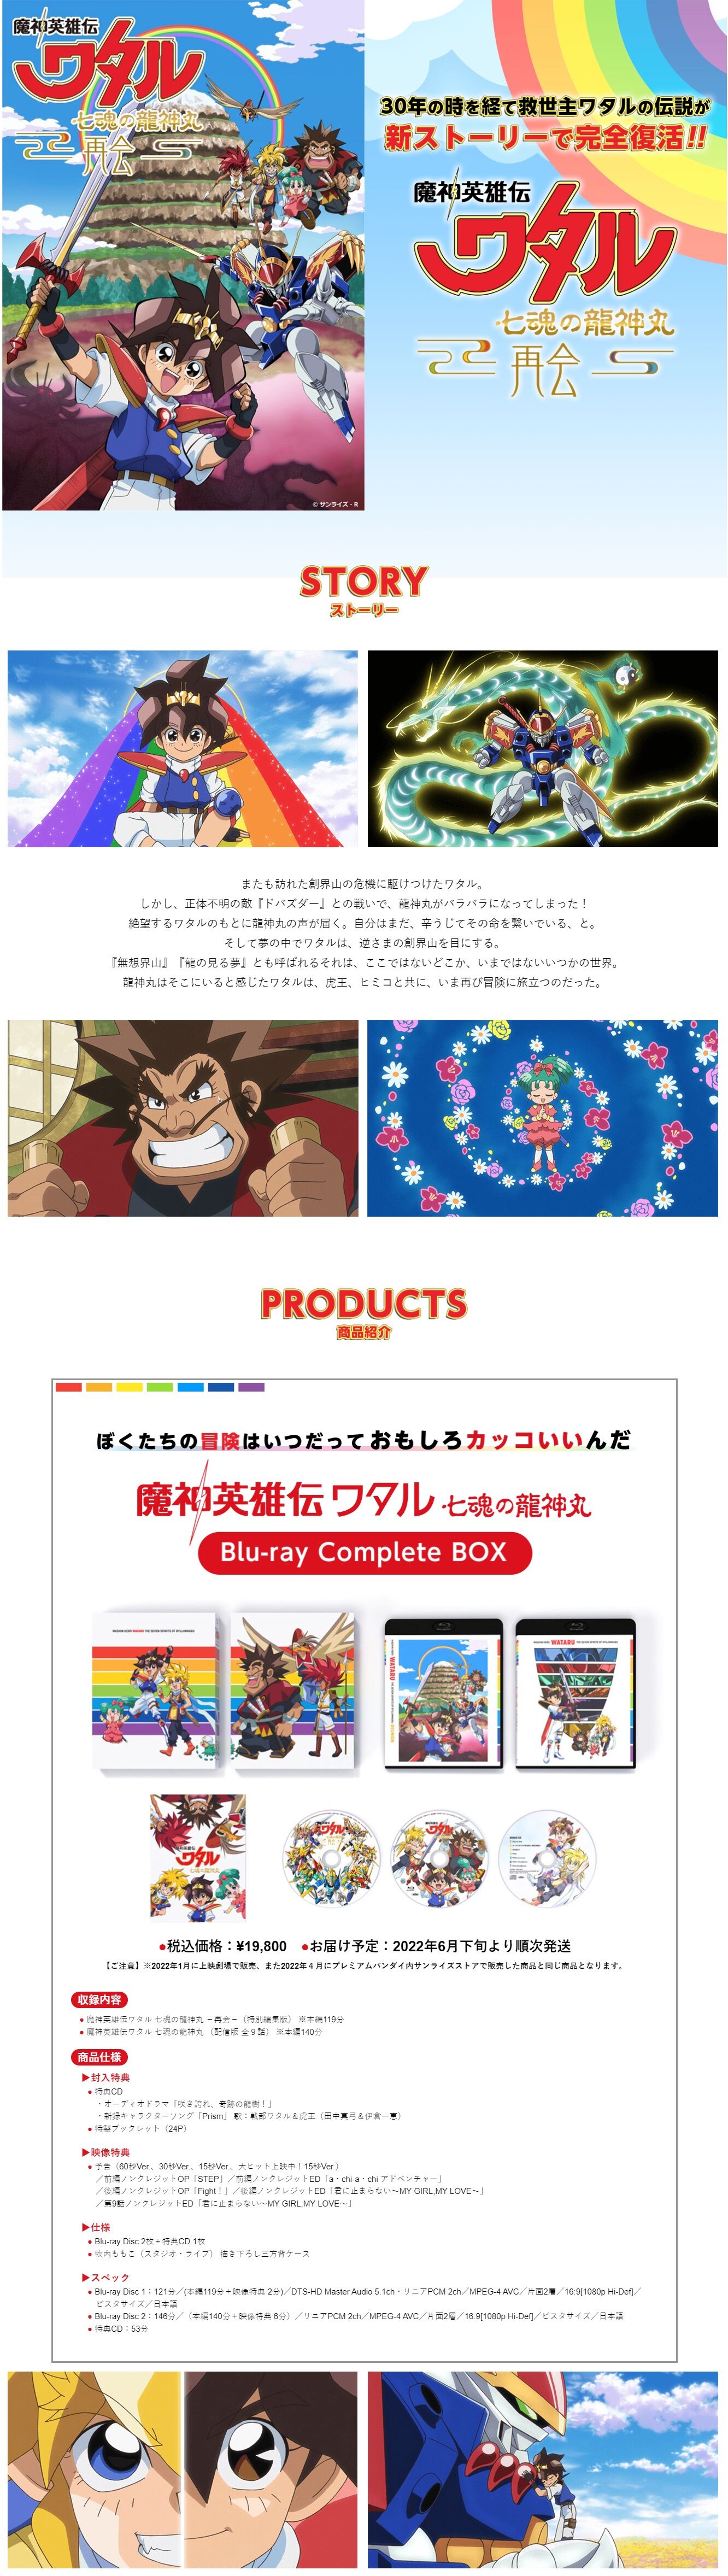 魔神英雄伝ワタル 七魂の龍神丸 Blu-ray Complete BOX【再販】【２次 